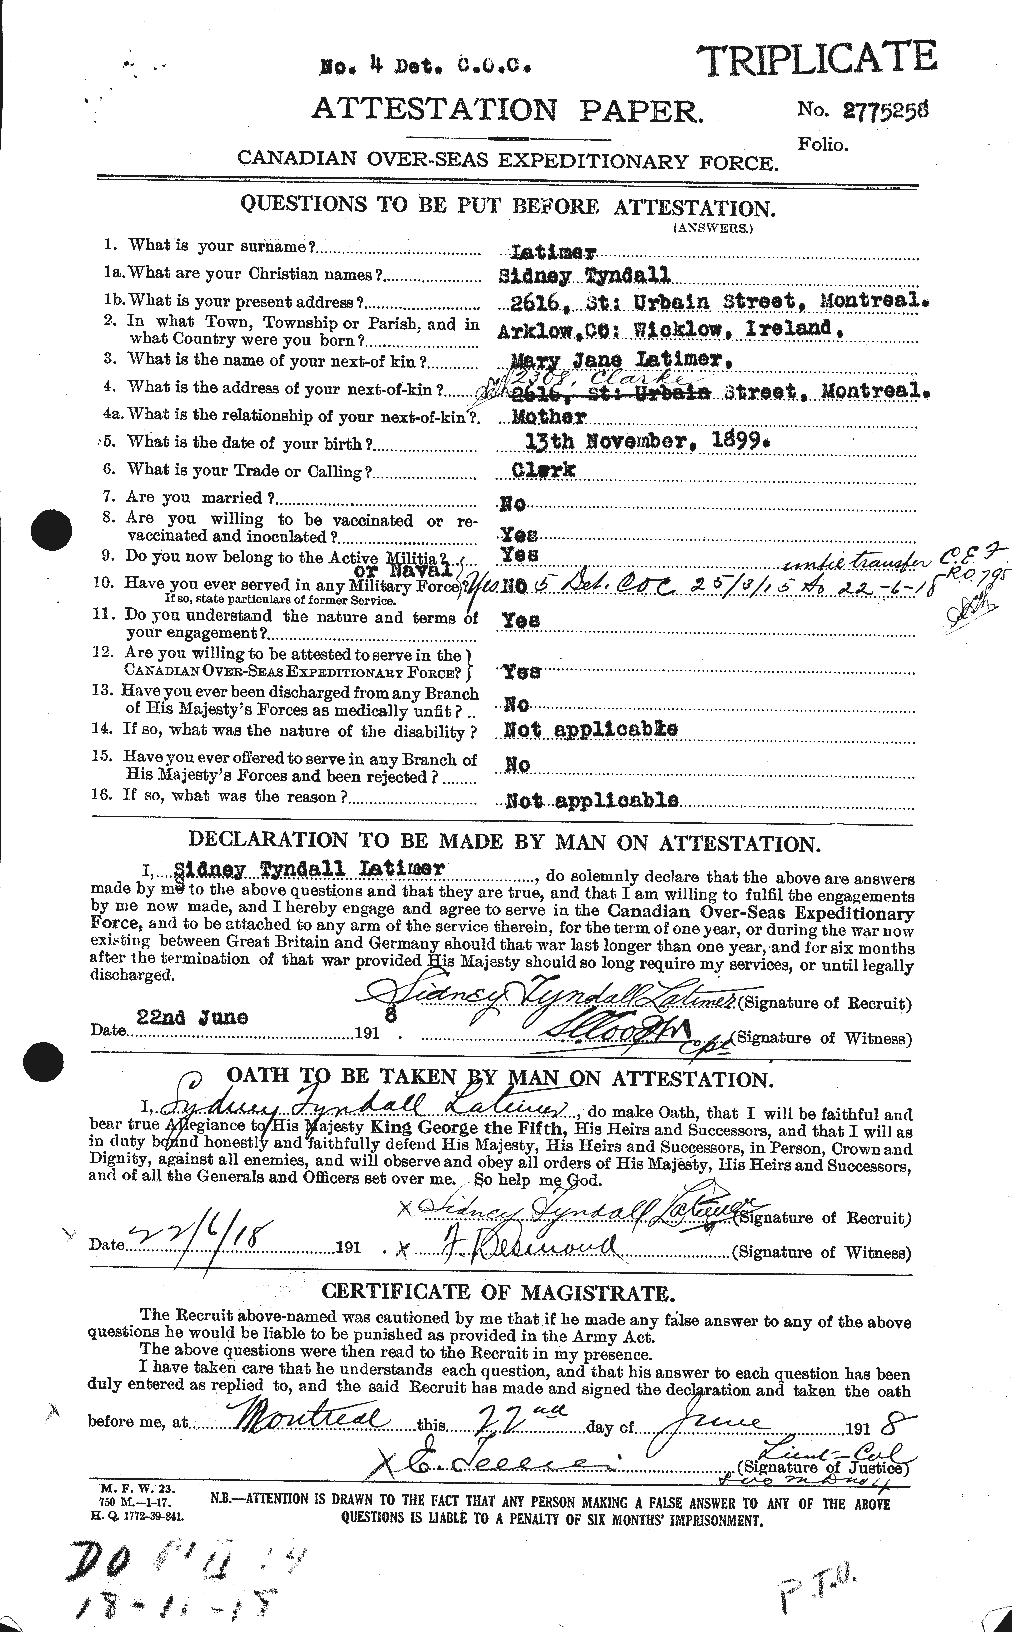 Dossiers du Personnel de la Première Guerre mondiale - CEC 455176a